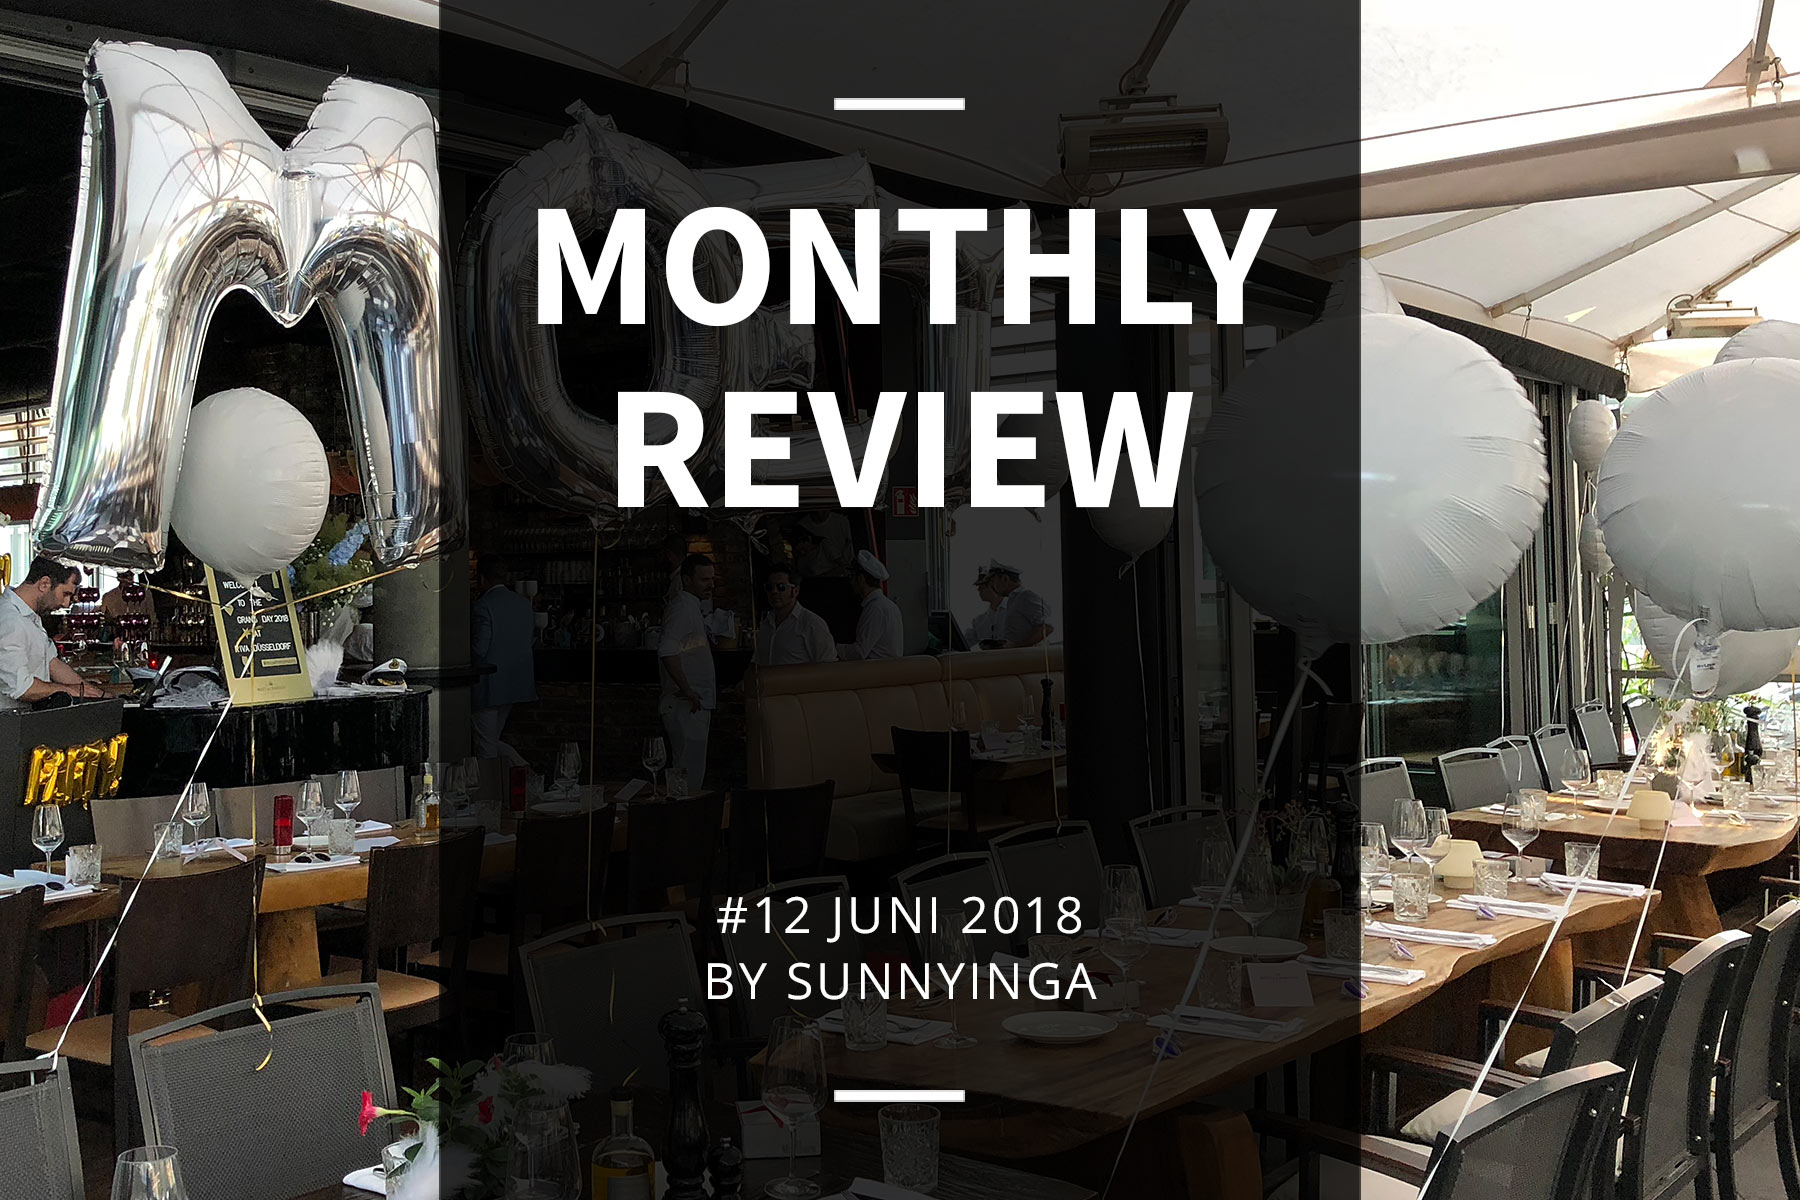 Sunnyinga Monthly Review Monatsrückblick #12 Juni 2018